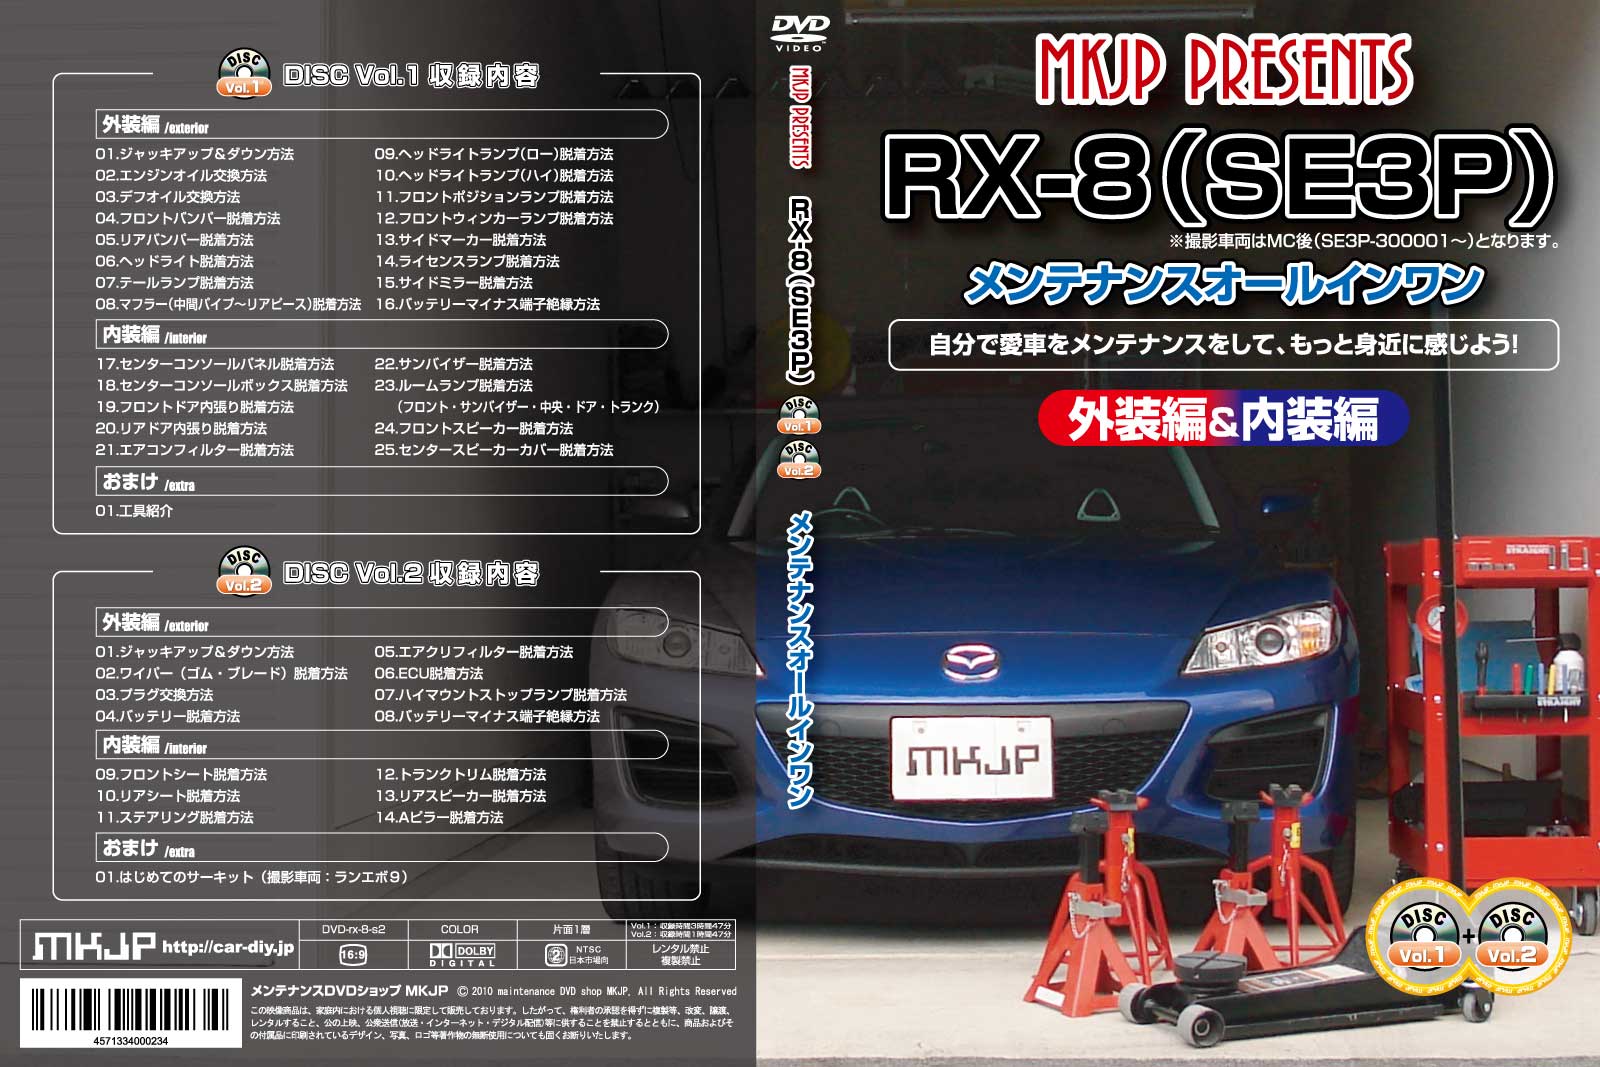 RX8（SE3P）【エアロやマフラー交換に！】メンテナンスDVD Vol.1 Vol.2 セット 【通常版】【送料無料】ポイント10倍！RX8のパーツエアロ取り付けに!